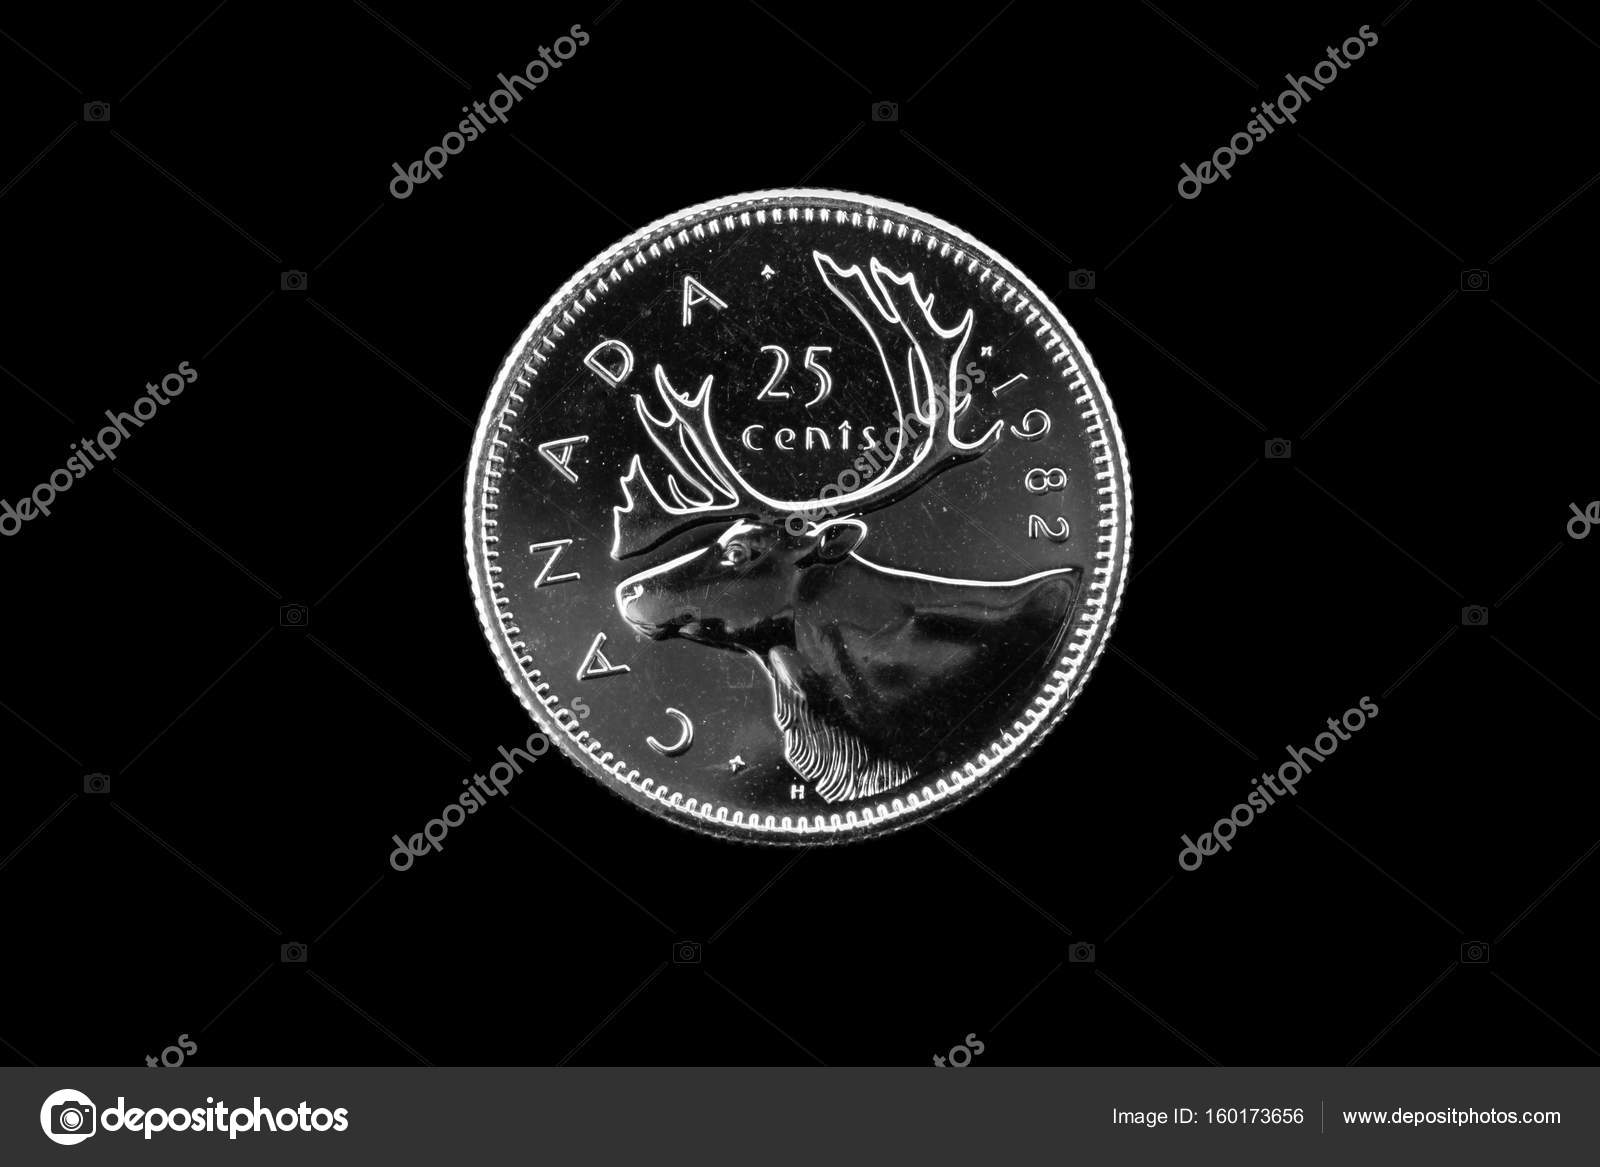 Đồng 25 cent Canada – Sự độc đáo của tiền tệ Canada! Với hình ảnh những loài động vật và danh thắng nổi tiếng của Canada, đồng 25 cent Canada được thiết kế tinh tế và hấp dẫn. Với mặt sau là hình ảnh Nữ thần tự do – biểu tượng cho sự tự do, độc lập và lòng trung thành, đồng xu này chắc chắn sẽ làm bạn thích thú.